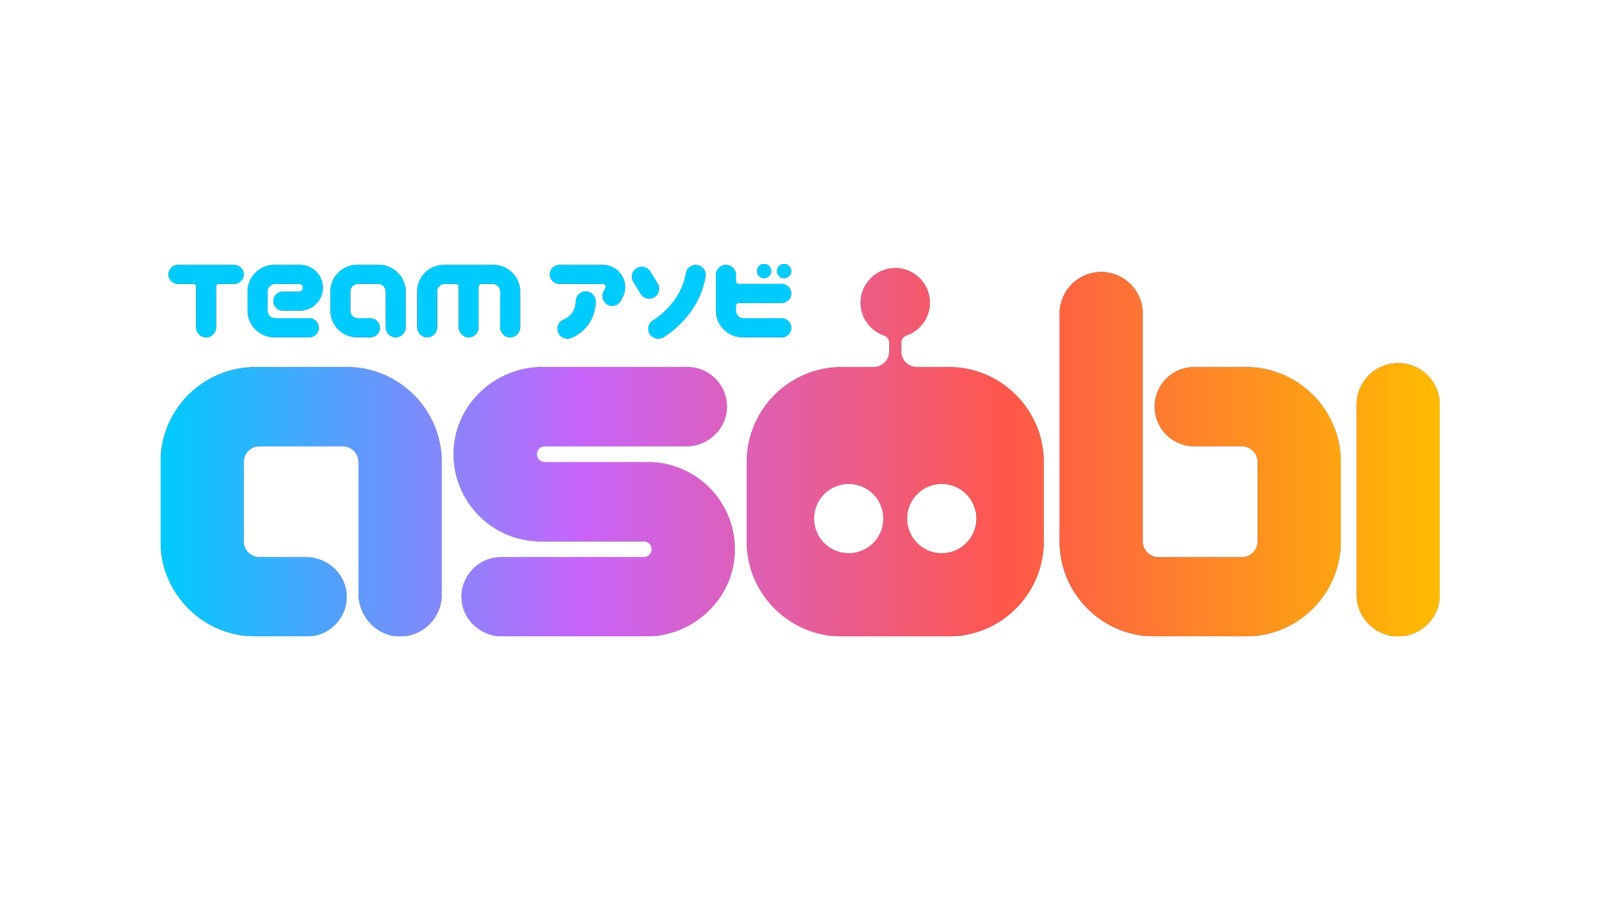 《太空机器人》系列创作团队“Team Asobi”公开新标志并分享未来计画